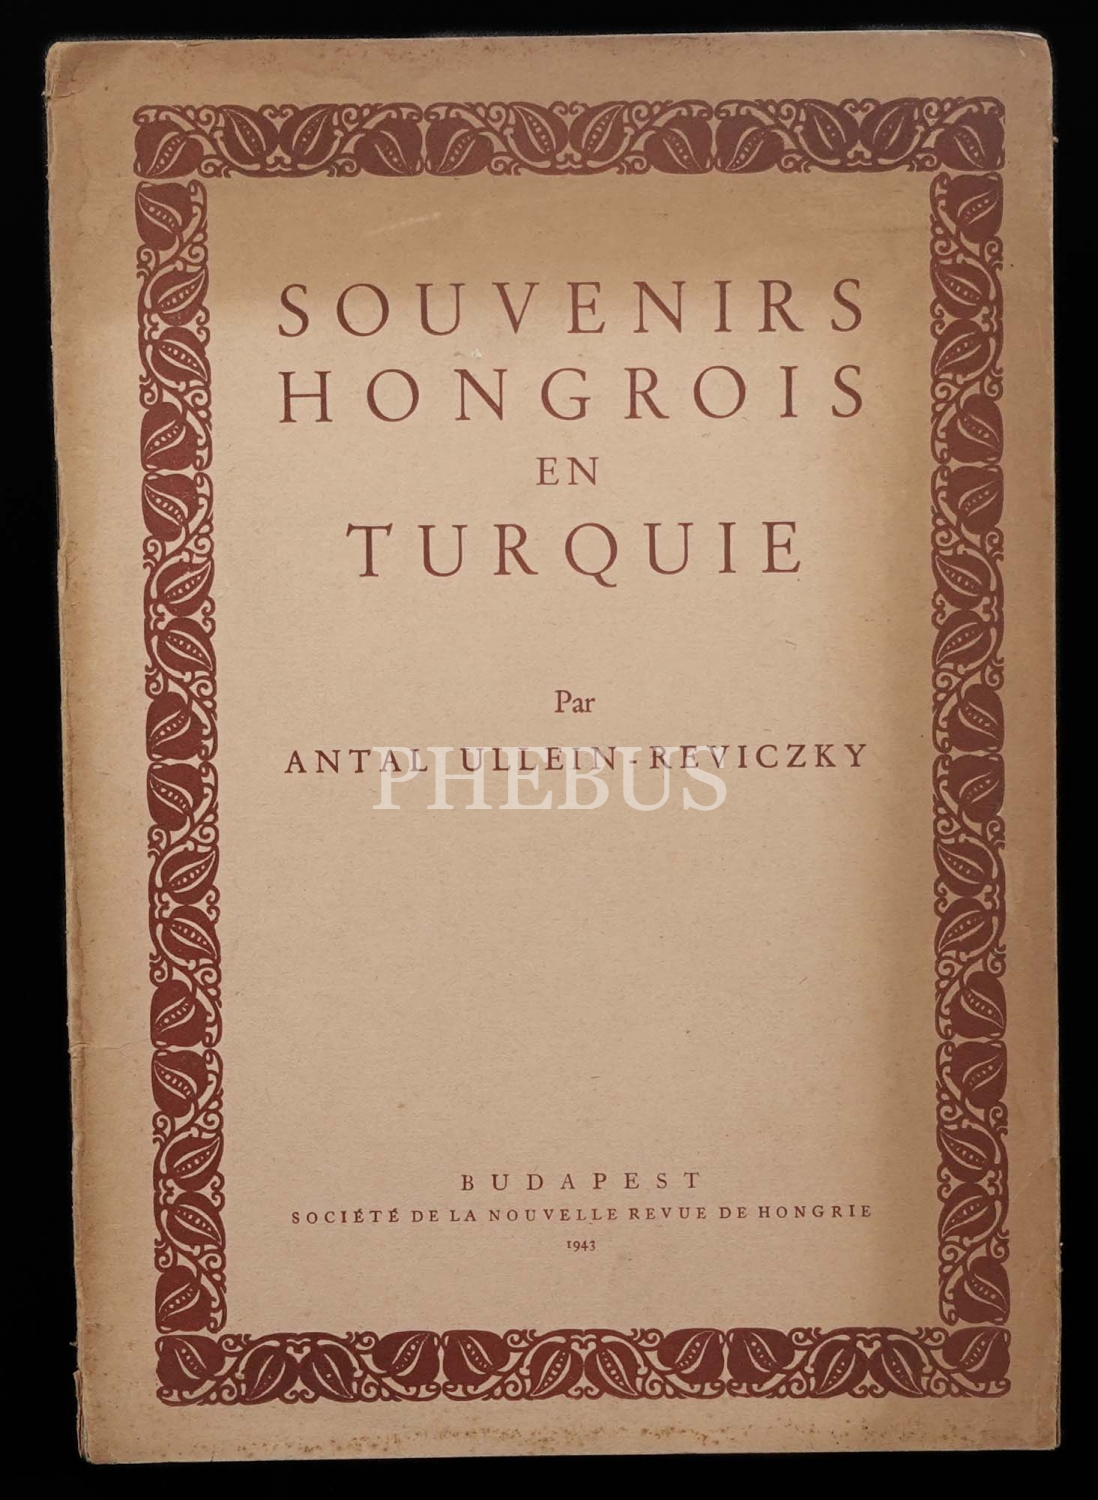 SOUVENIRS HONGROIS EN TURQUIE, Antal Ullein-Reviczky, 1943, Socéte De La Nouvelle Revue De Hongrie,8 sayfa, Budapeşte, 19x27 cm...